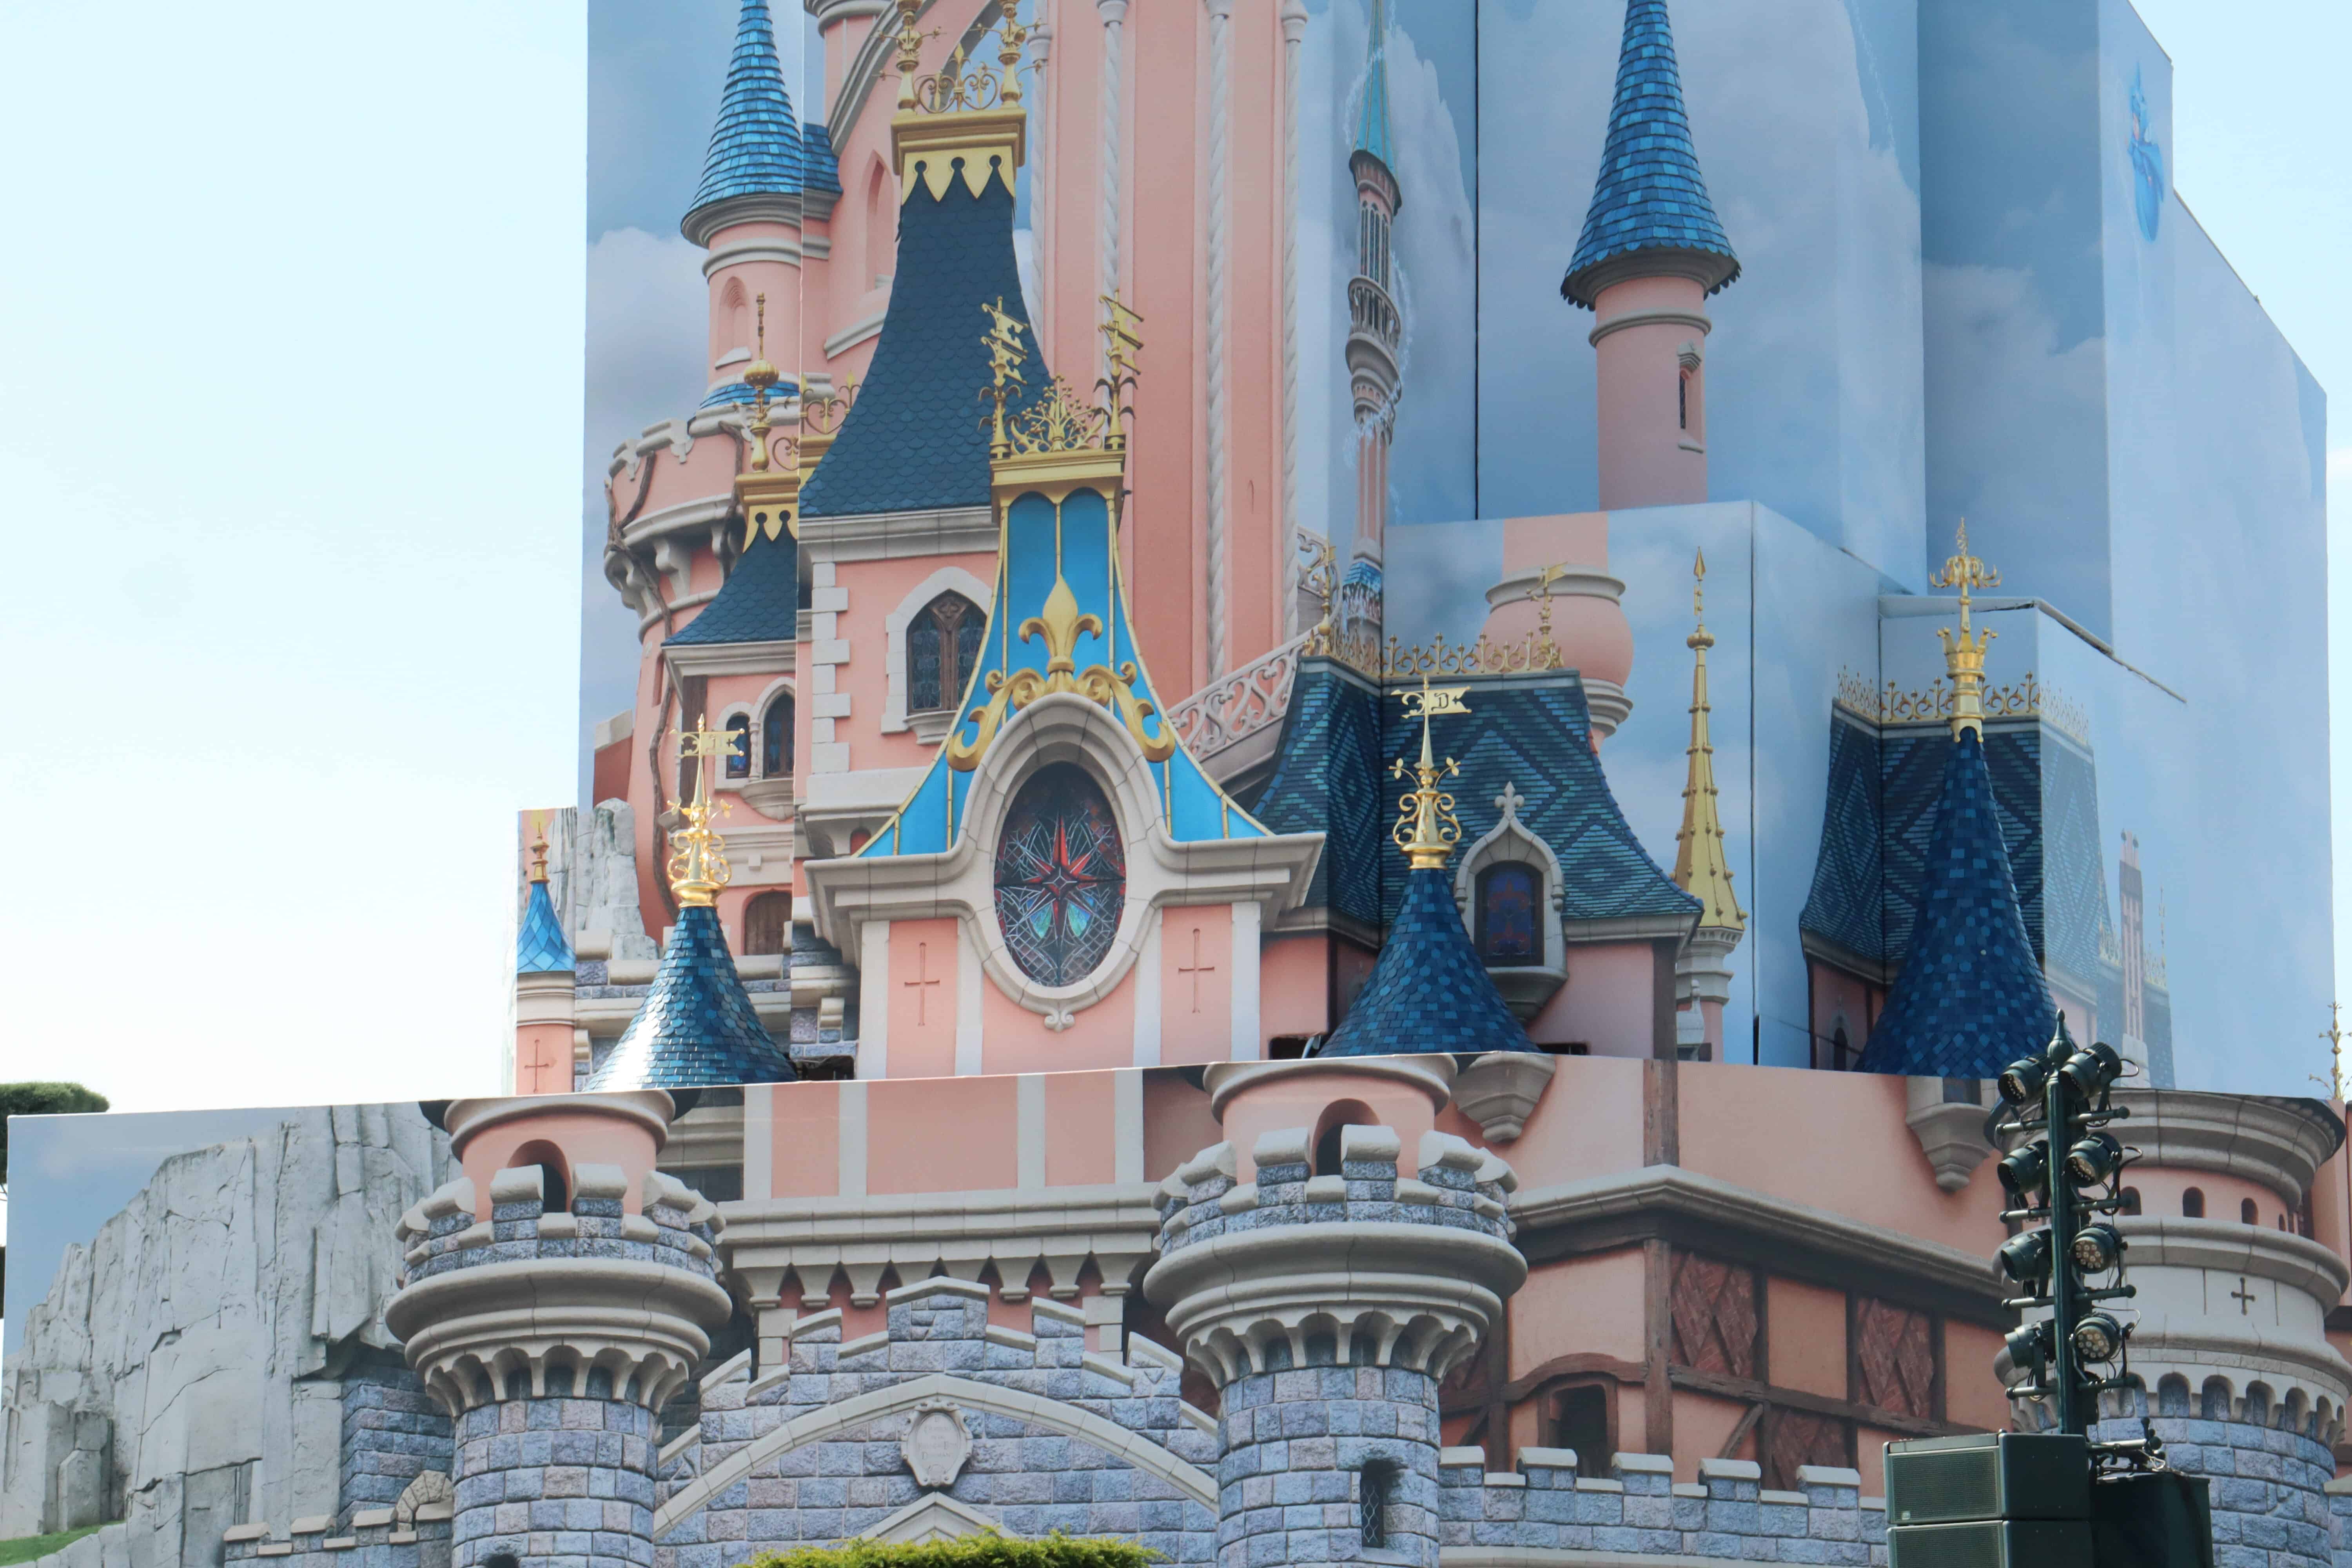 Photos Disneyland Paris Castle Refurbishment Travel to the Magic